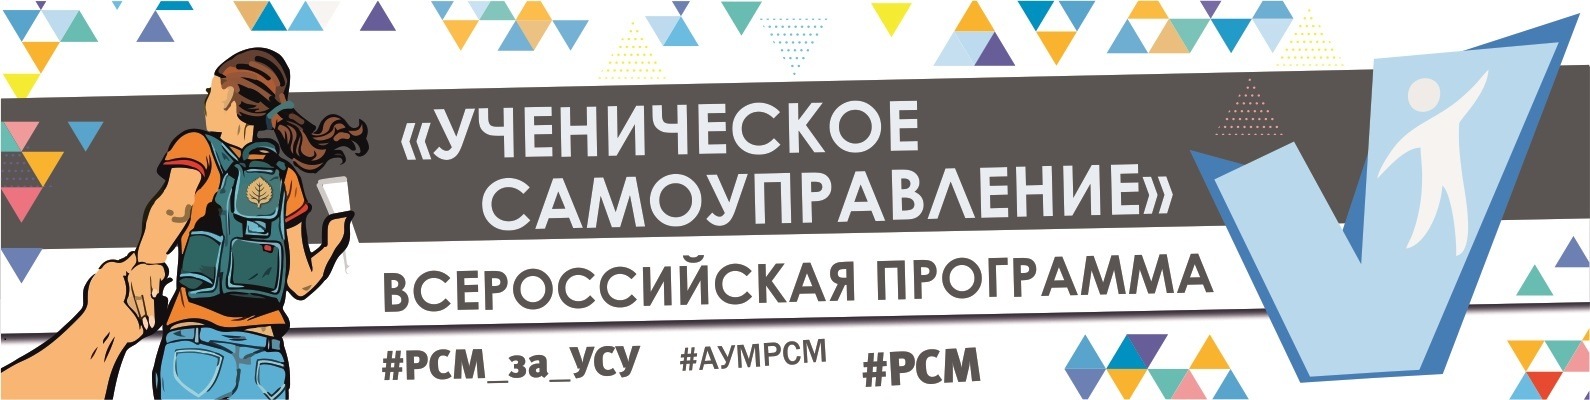 Центральная программа Российского Союза Молодежи  «Ученическое самоуправление»